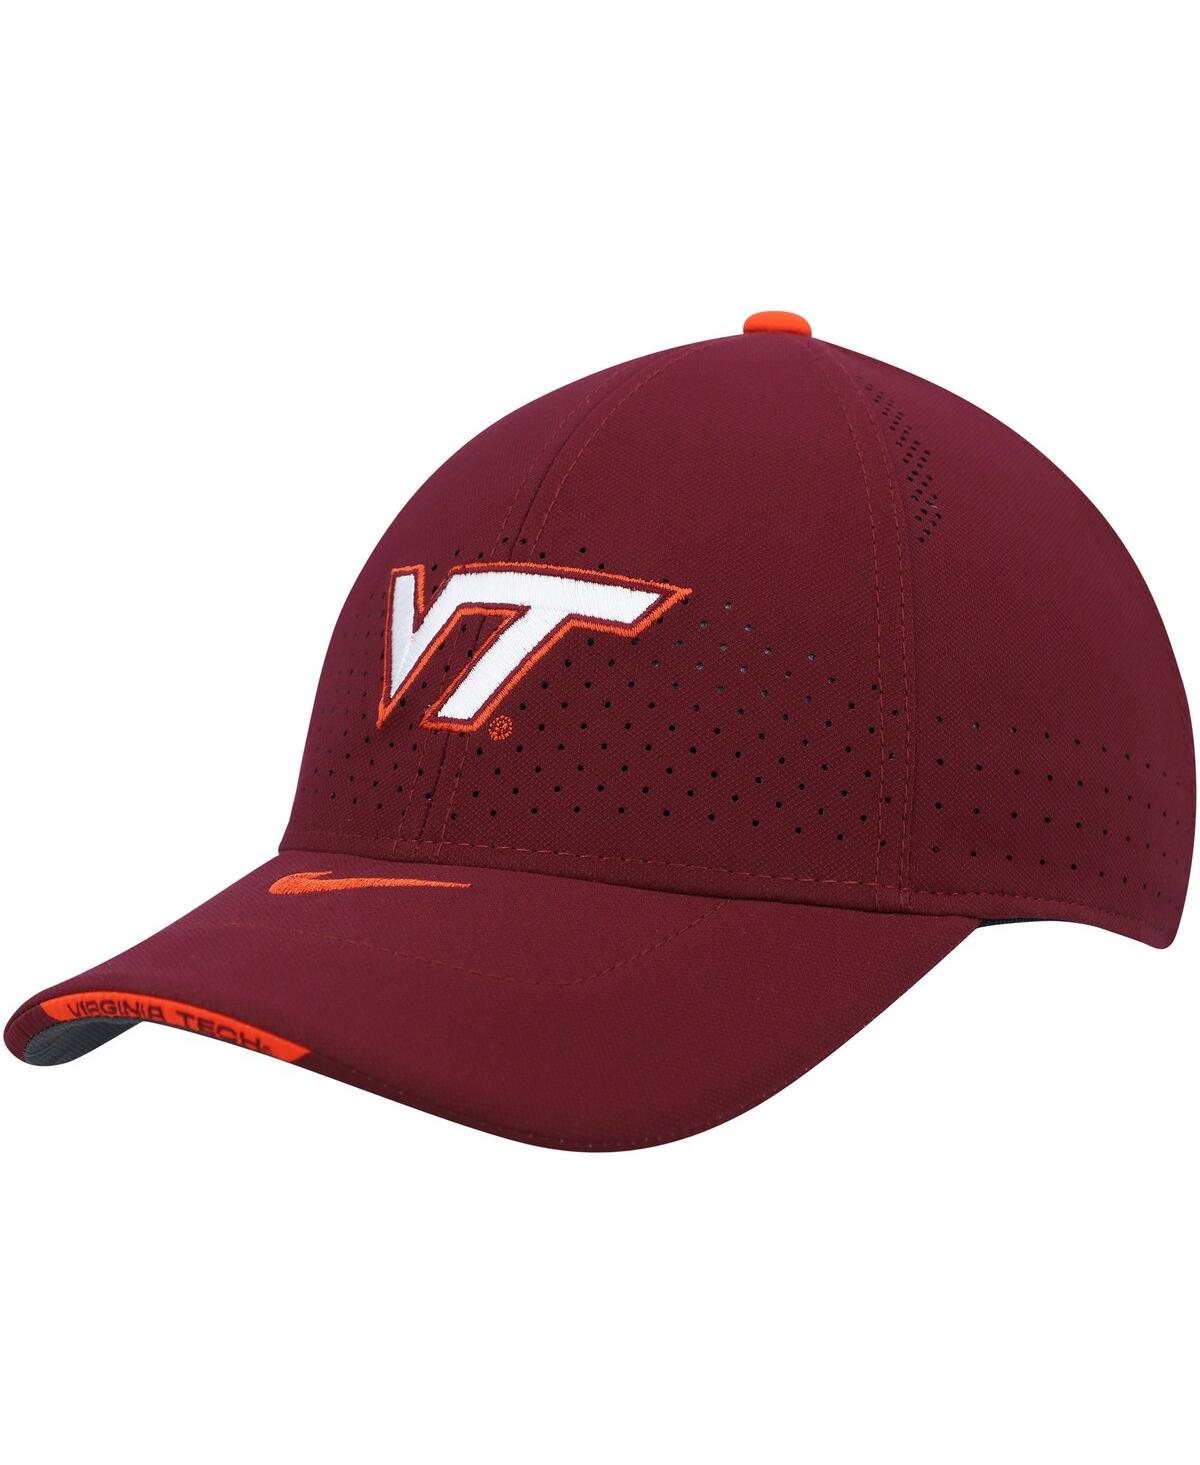 Shop Nike Men's  Maroon Virginia Tech Hokies 2021 Sideline Legacy91 Performance Adjustable Hat